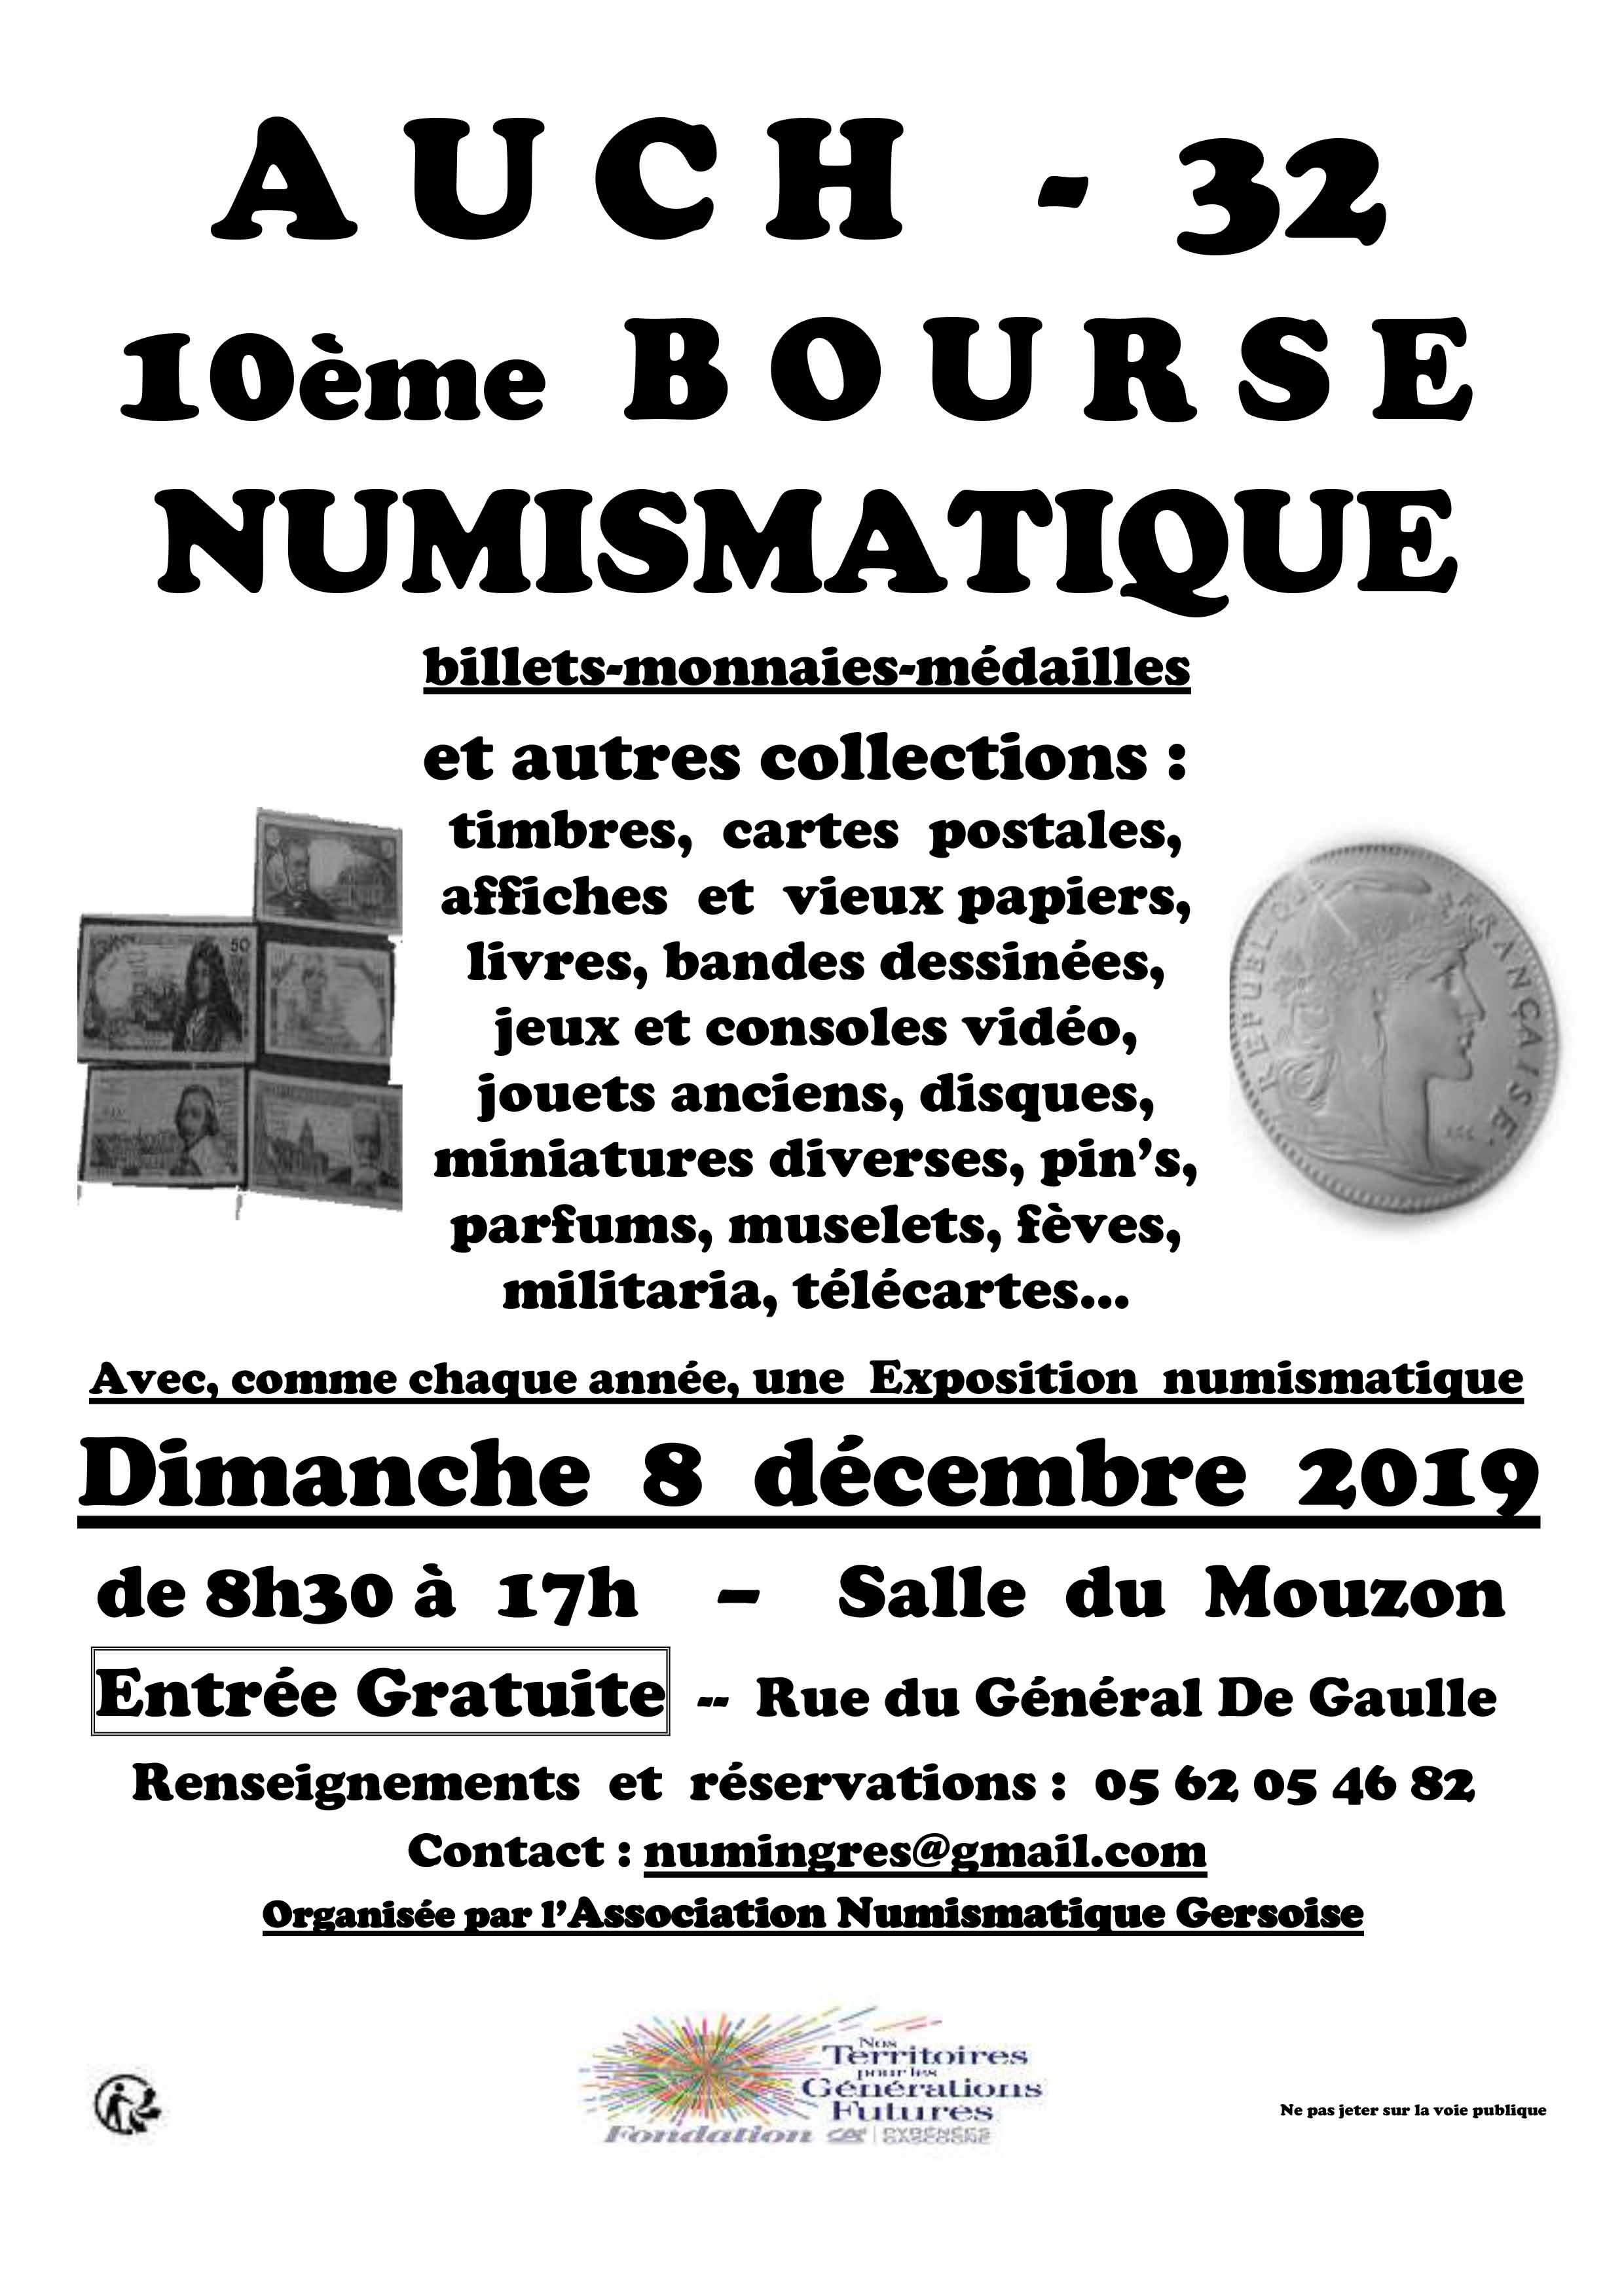 Bourse Numismatique d'Auch 2019.jpg - 481,06 kB